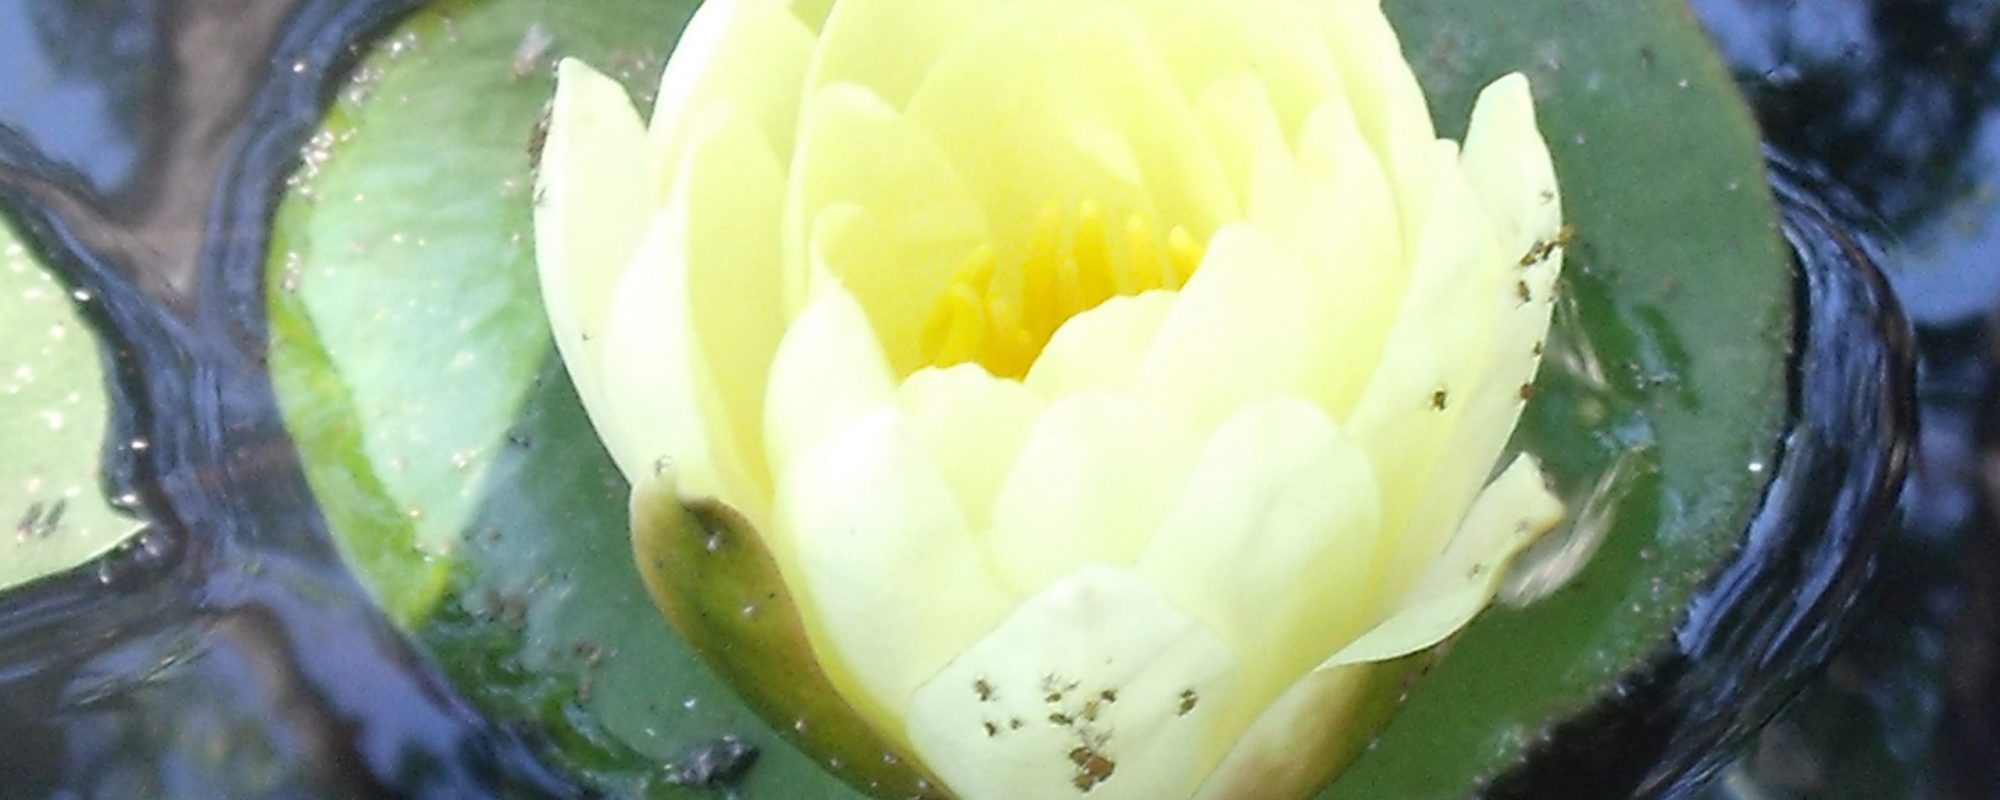 Fleur de lotus pour accueillir sur la présentation de l'assocation et de ses activités de Yoga et atelier Mandala